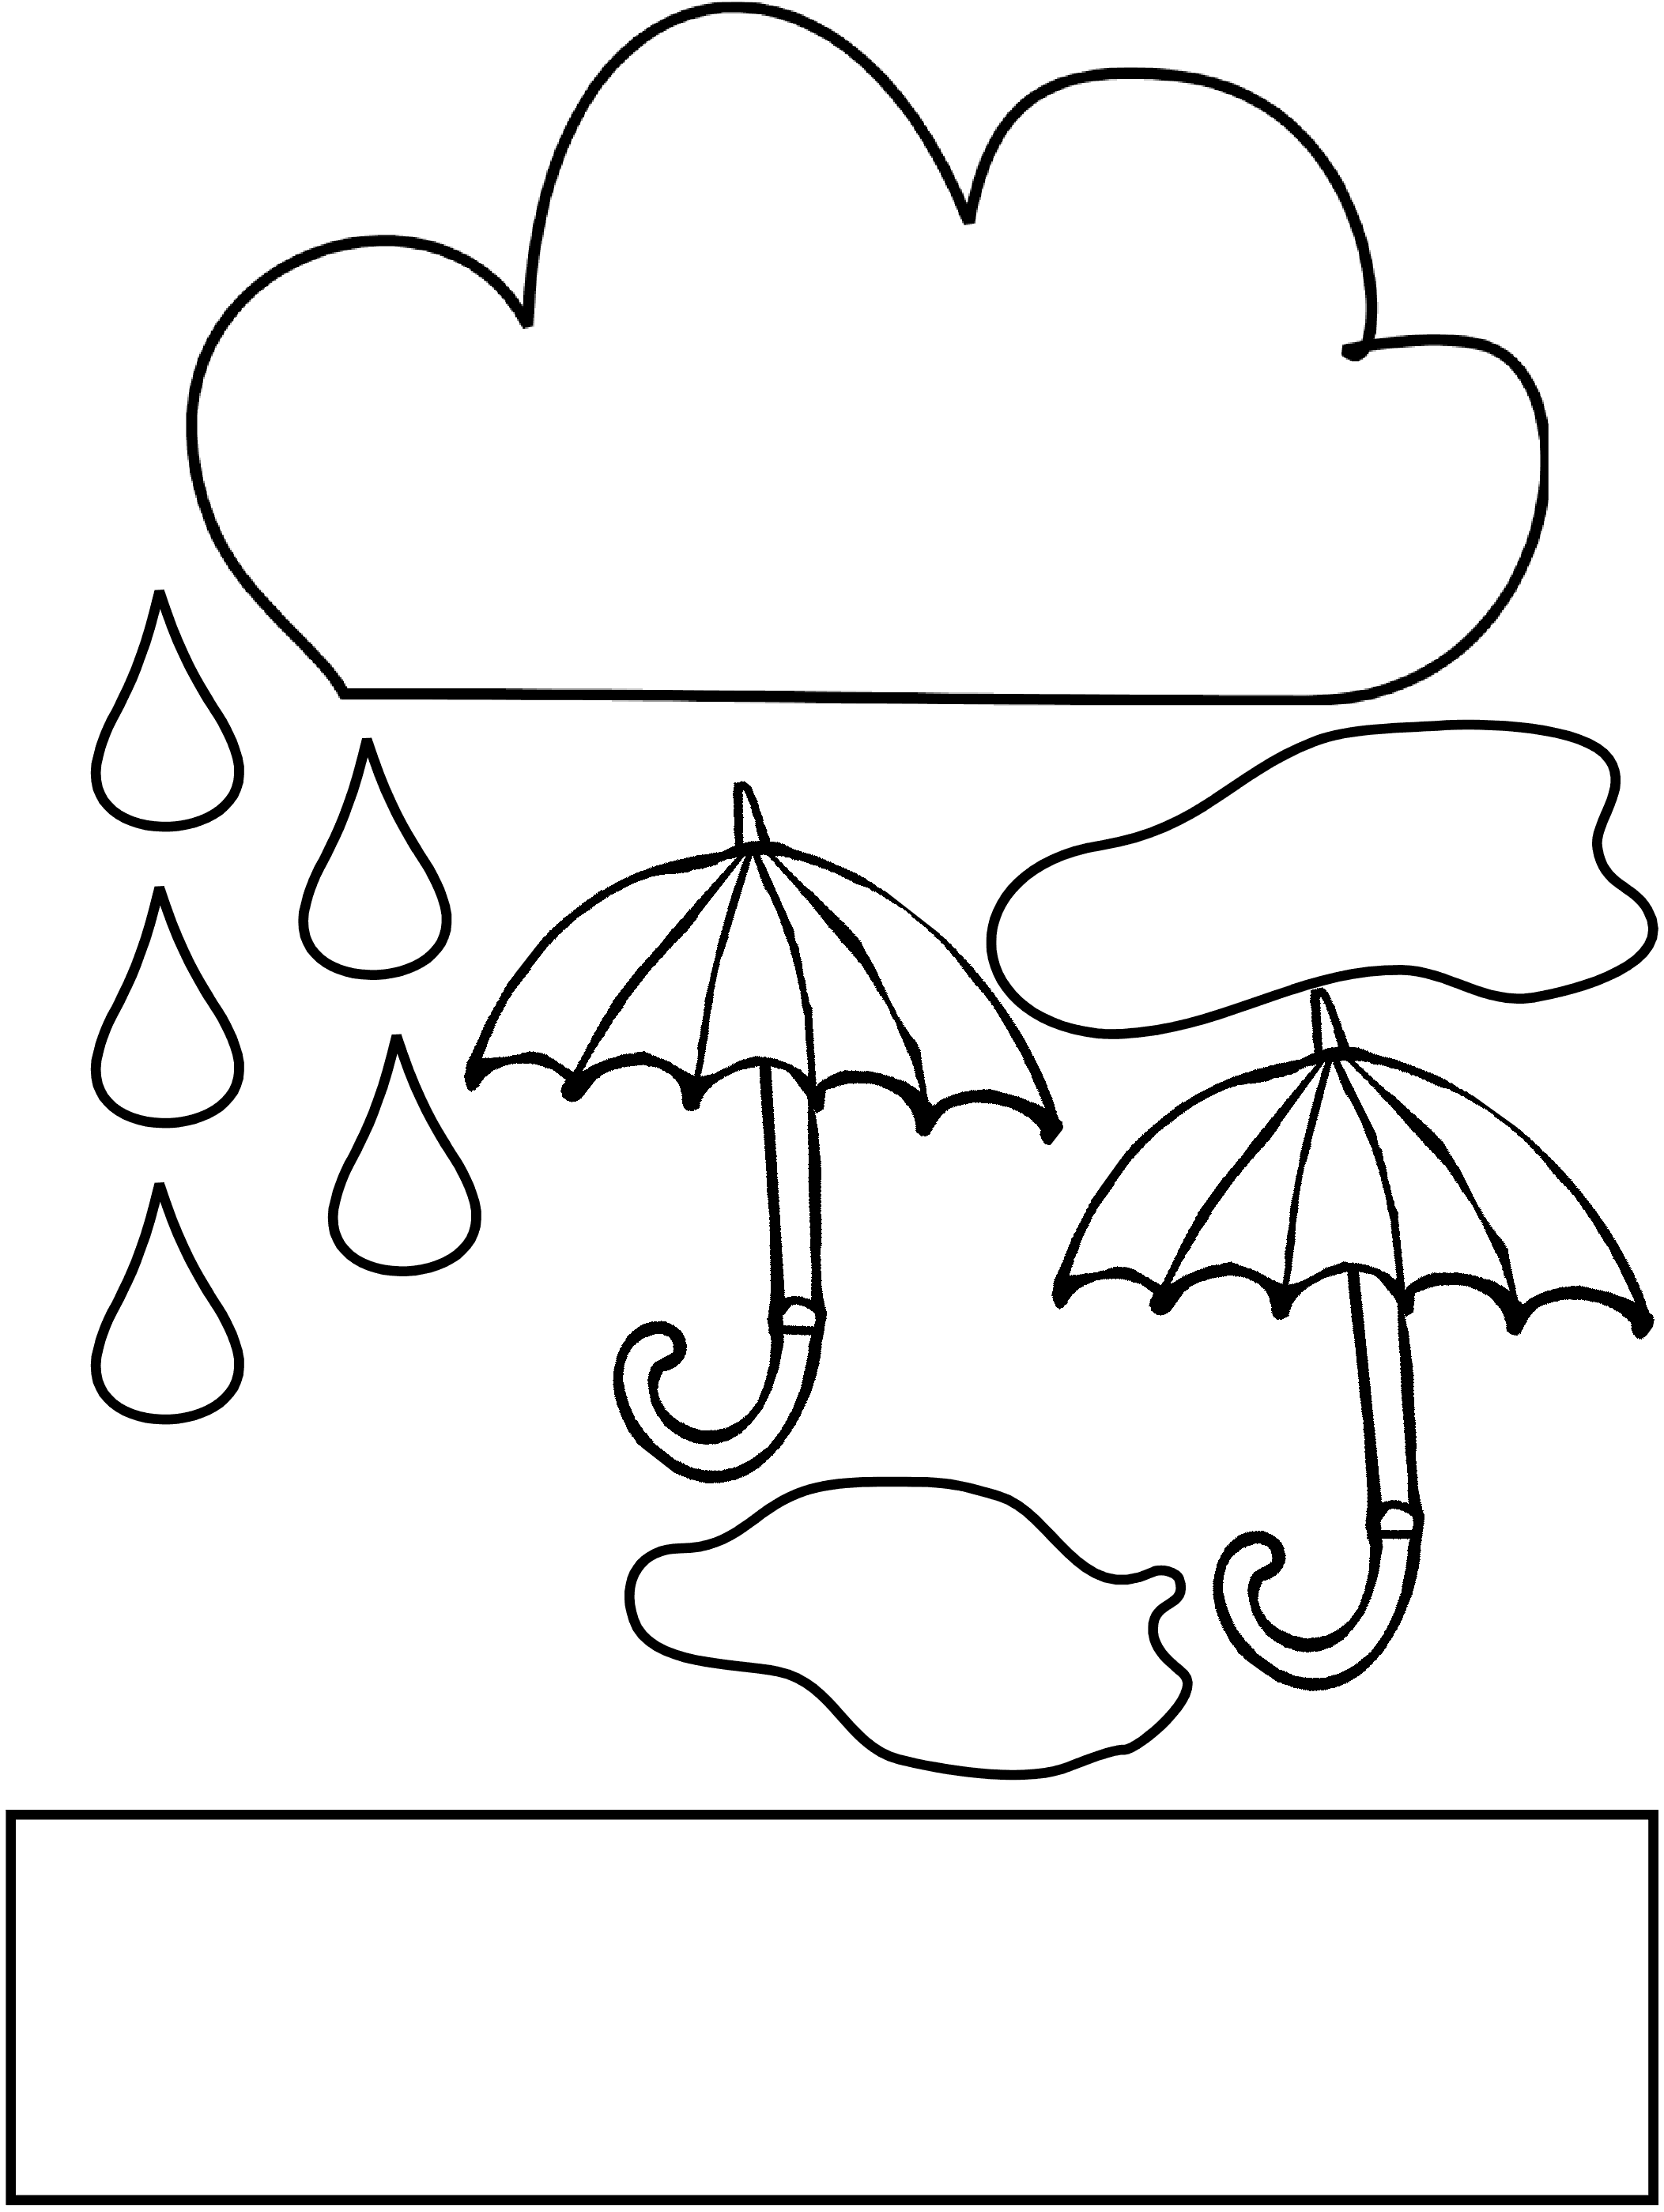 Rain Drop Coloring Page - ClipArt Best